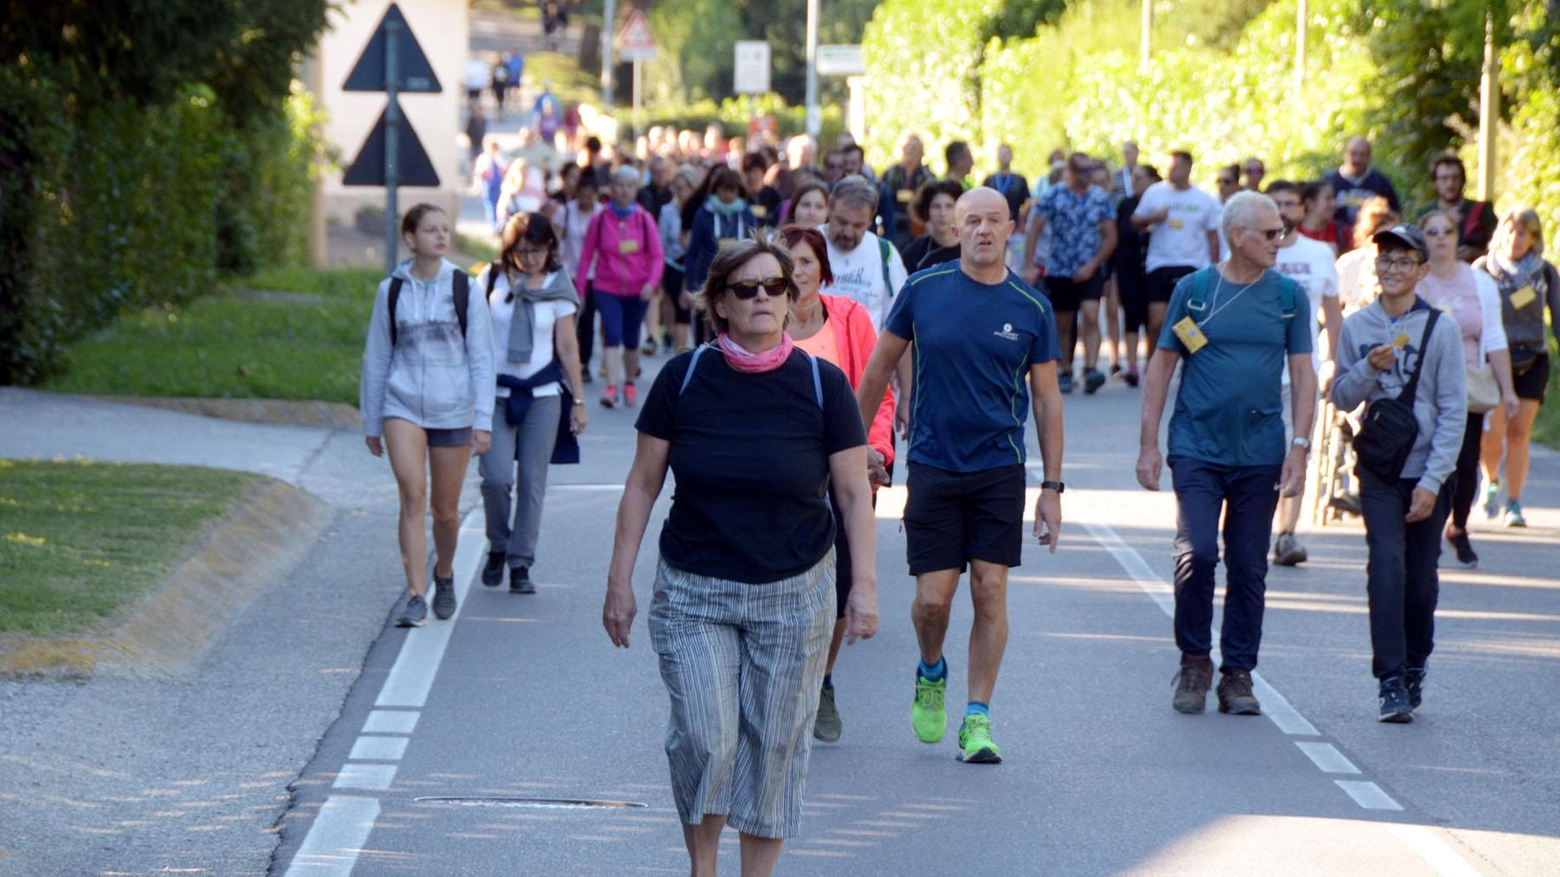 Domenica i Lions di Colico organizzano una camminata di solidarietà non competitiva di 5 km per promuovere il loro impegno filantropico. Partenza alle 10.30 dal Palalegnone.